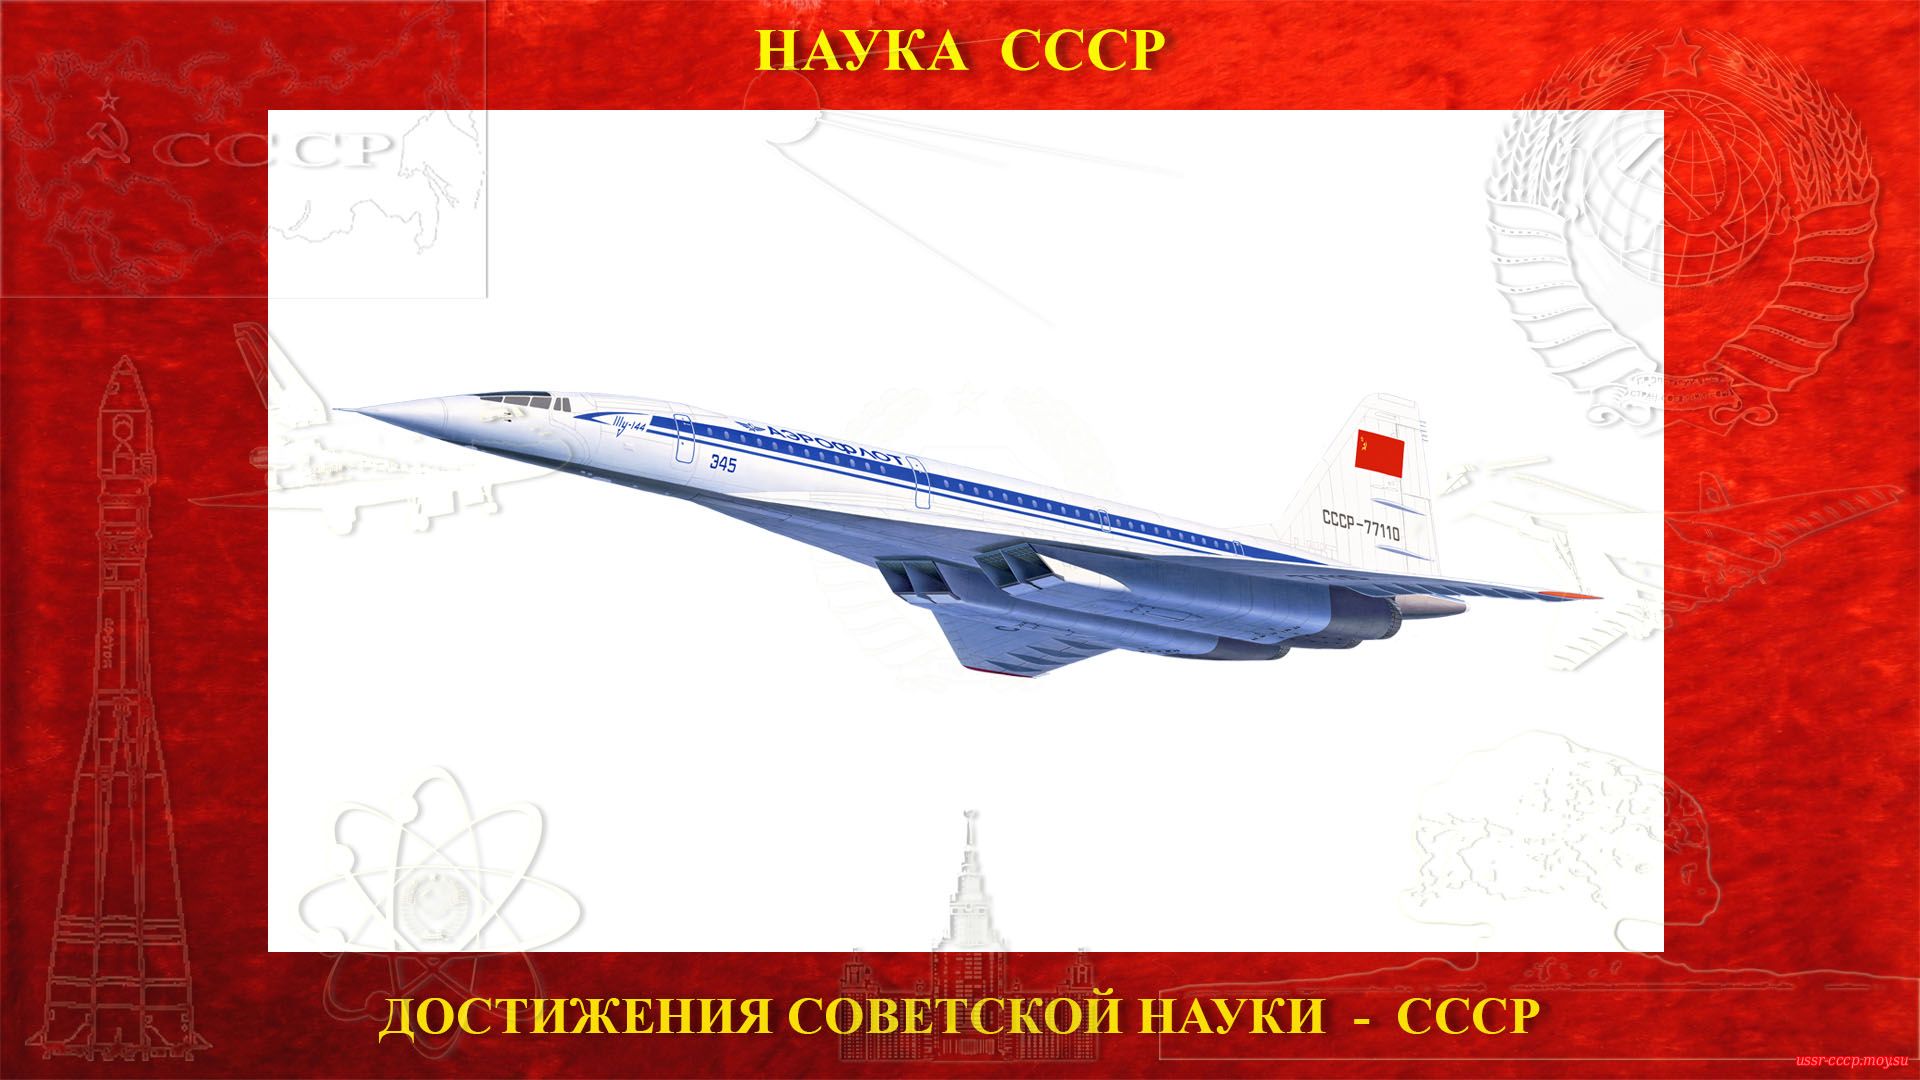 Ту-144 (по кодификации НАТО: Charger) — Советский сверхзвуковой пассажирский самолёт